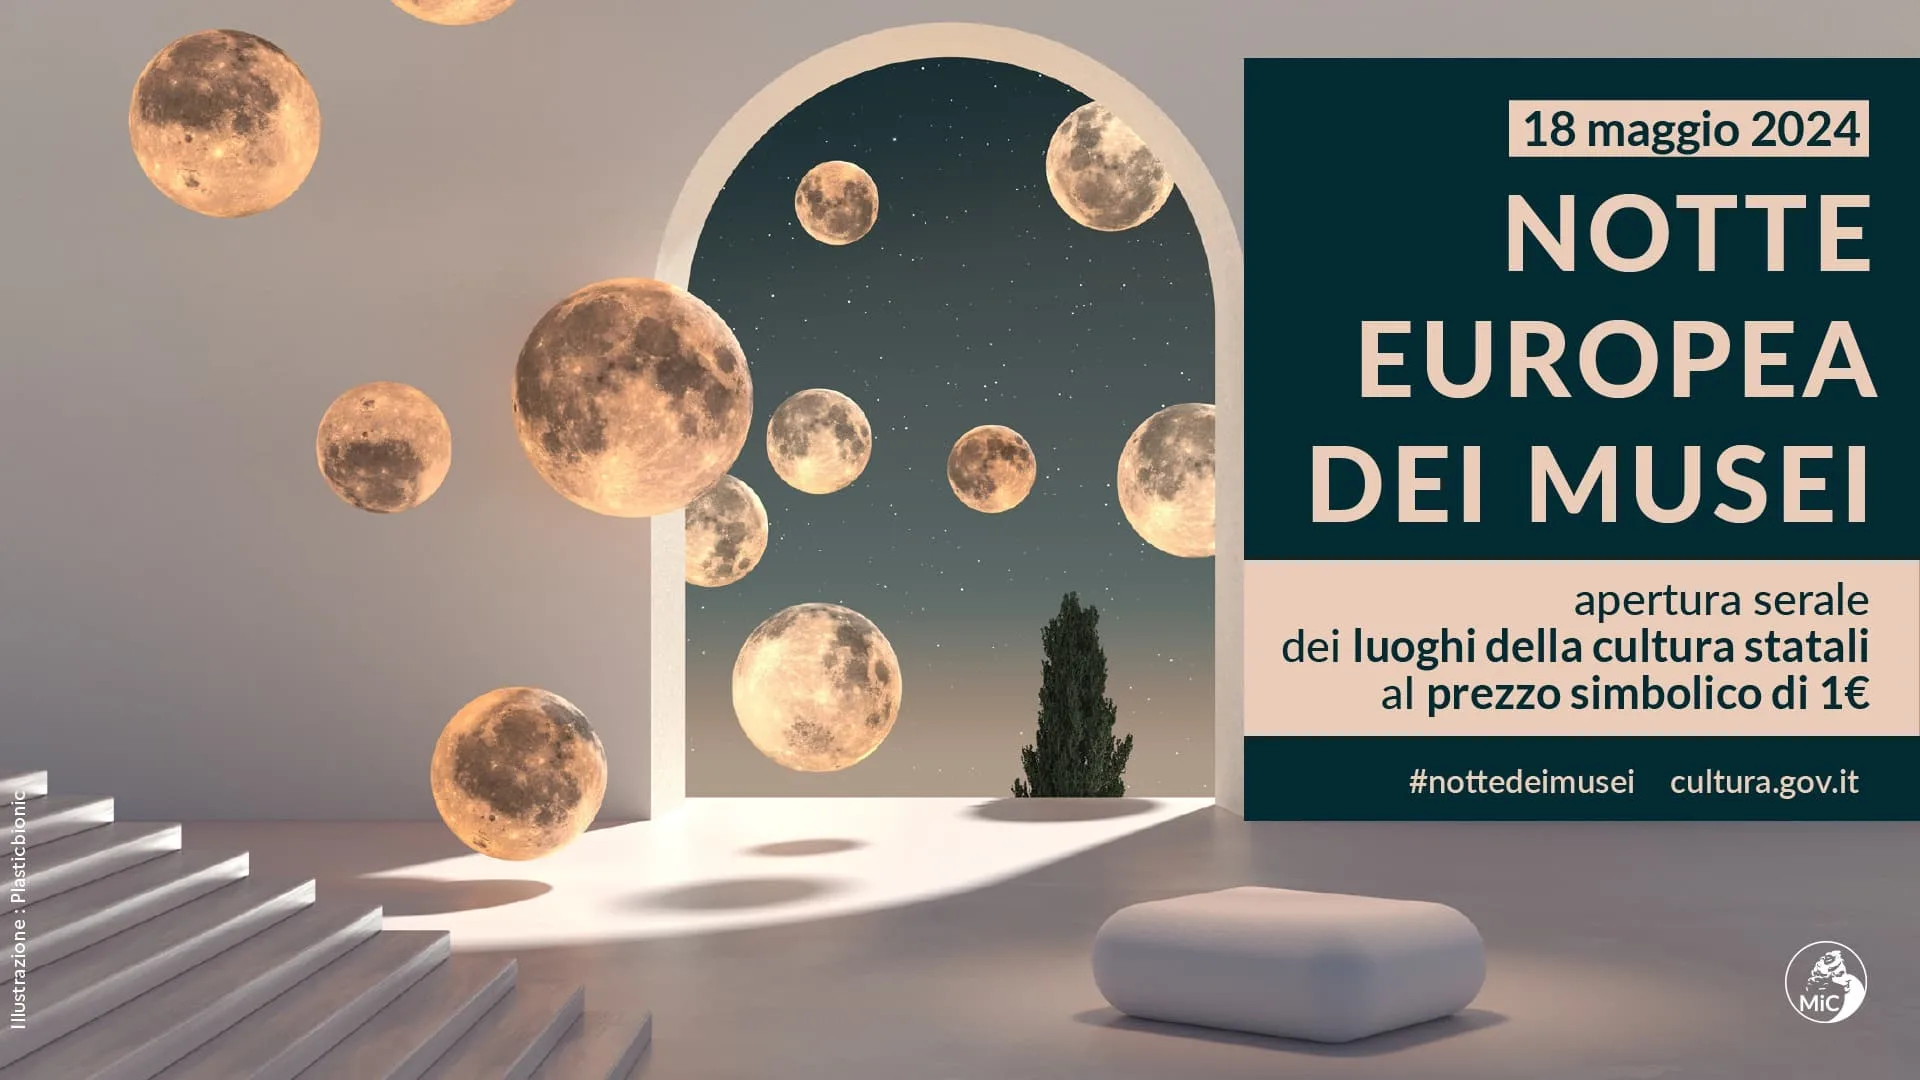 Notte europea musei 2024 1 euro